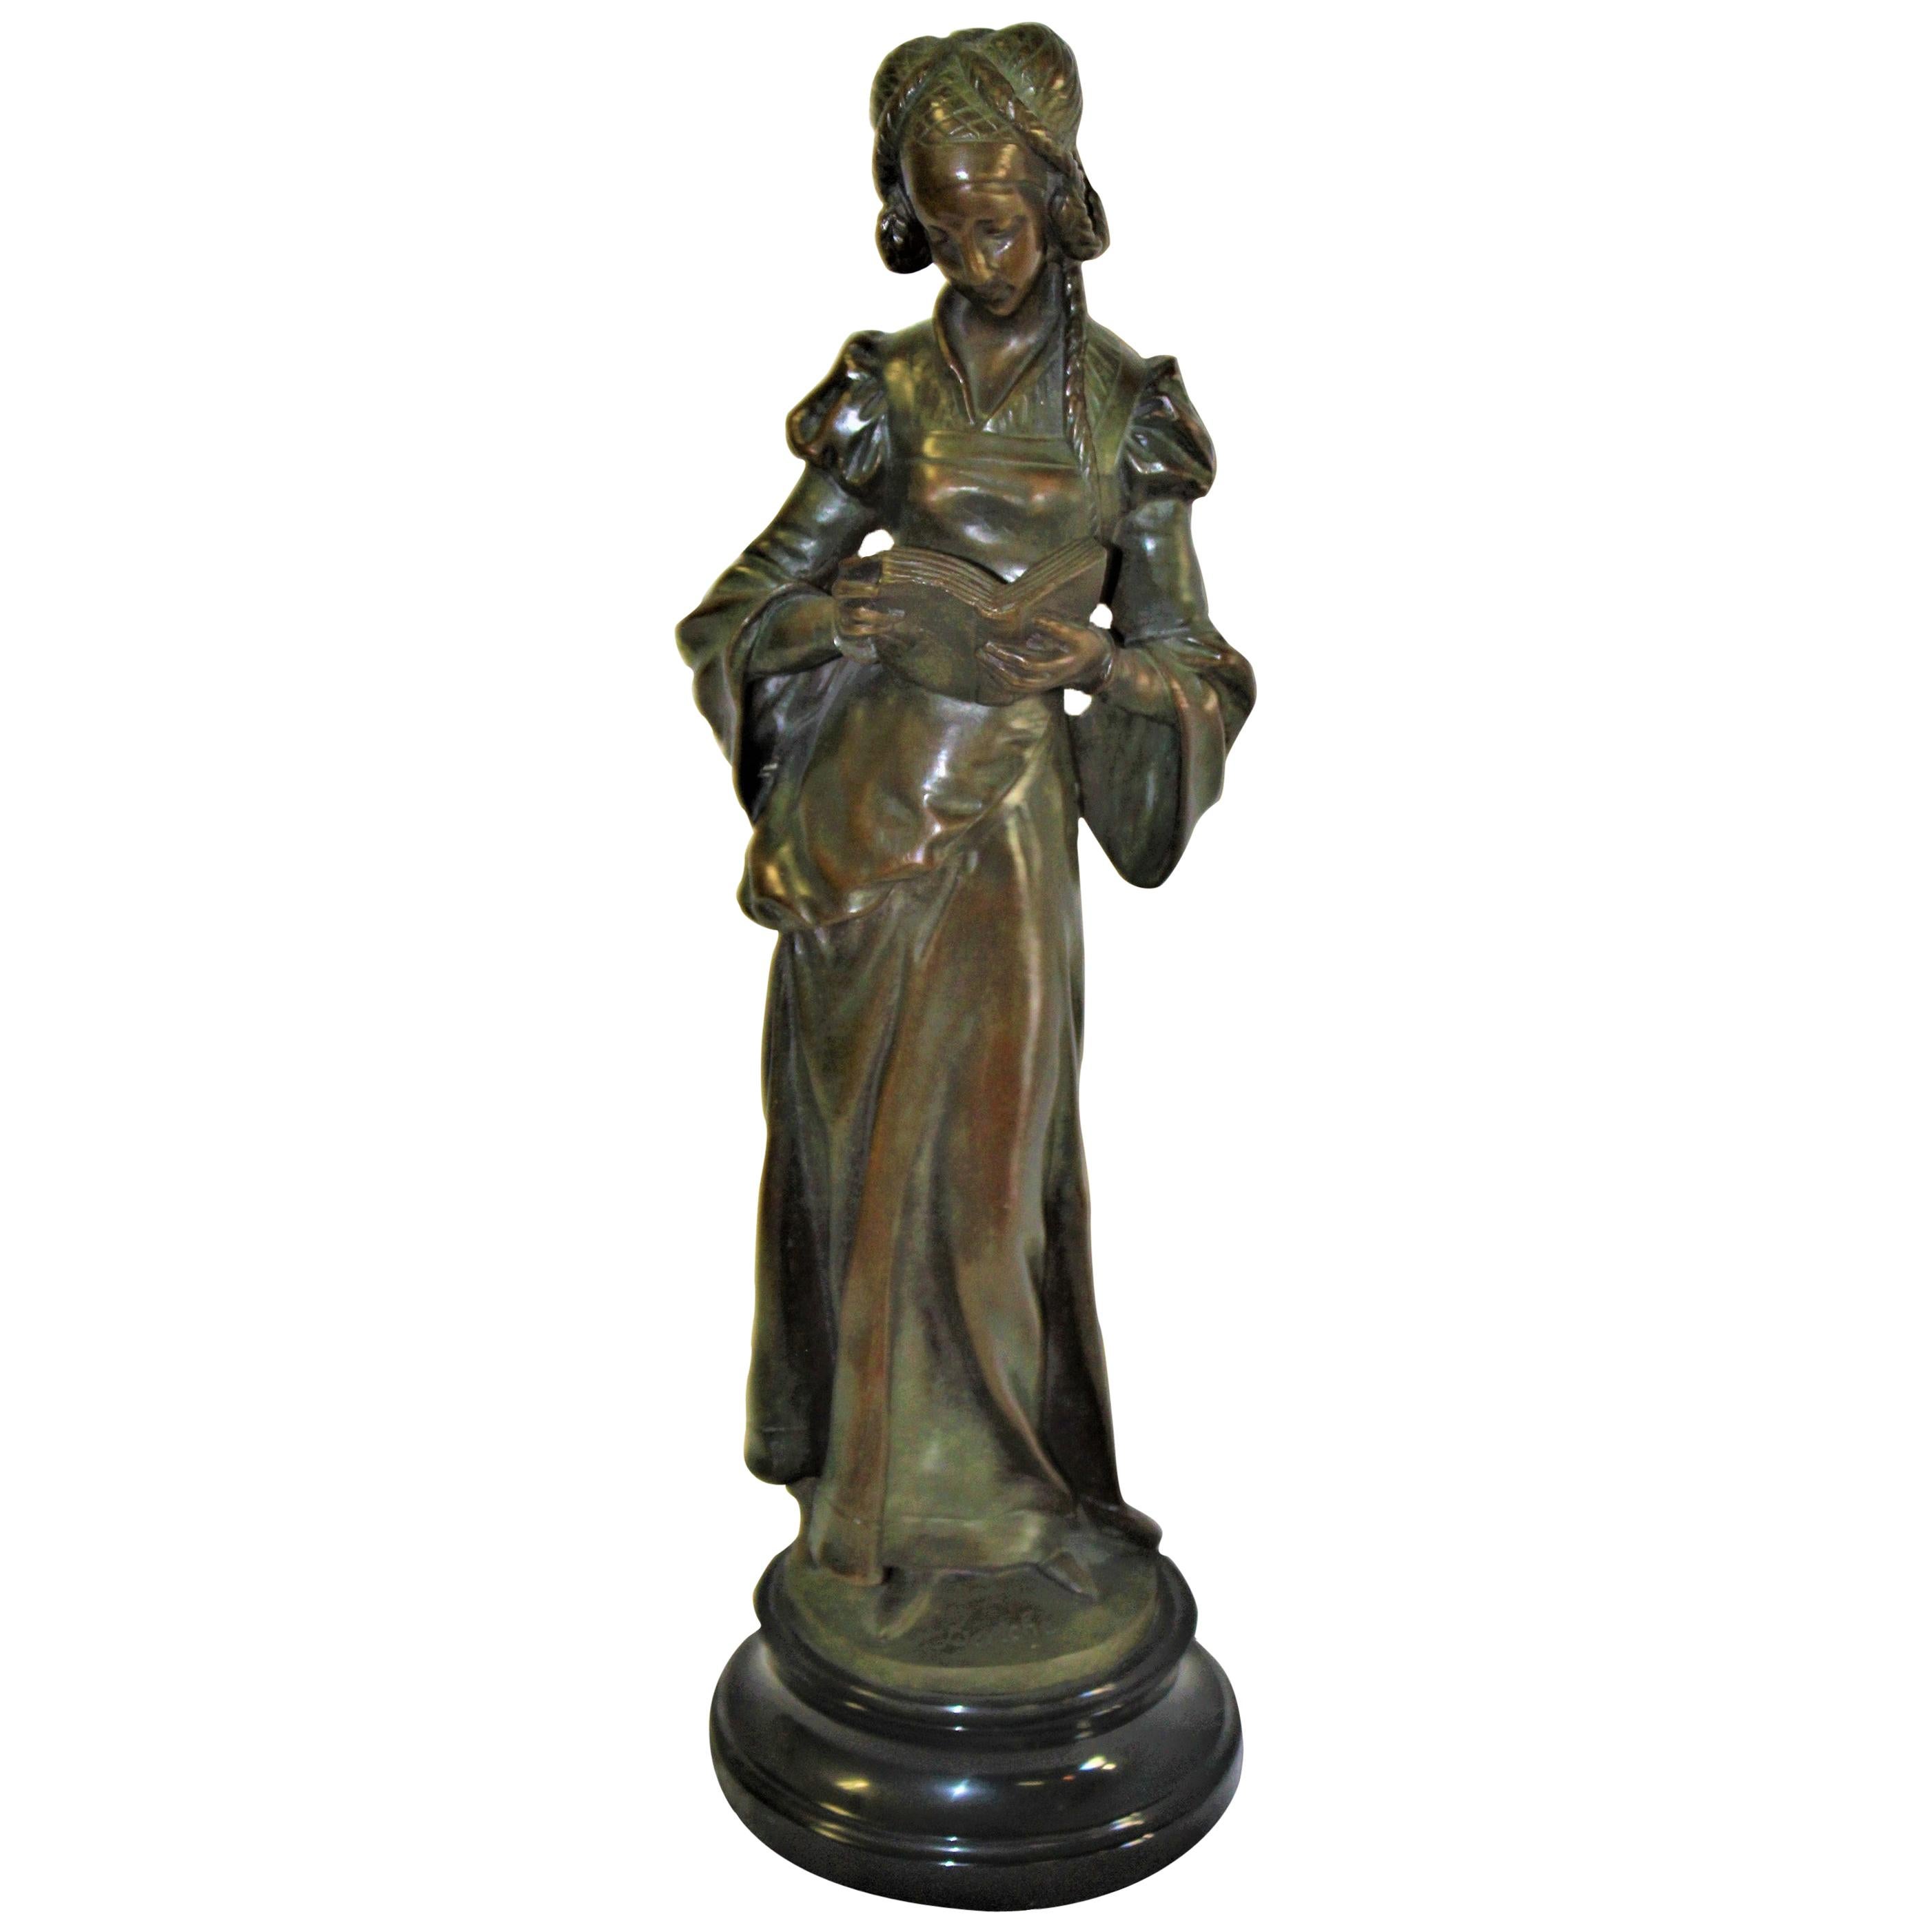 Dame en bronze Art Nouveau, socle en marbre 'The book Lady' (La Dame du livre)